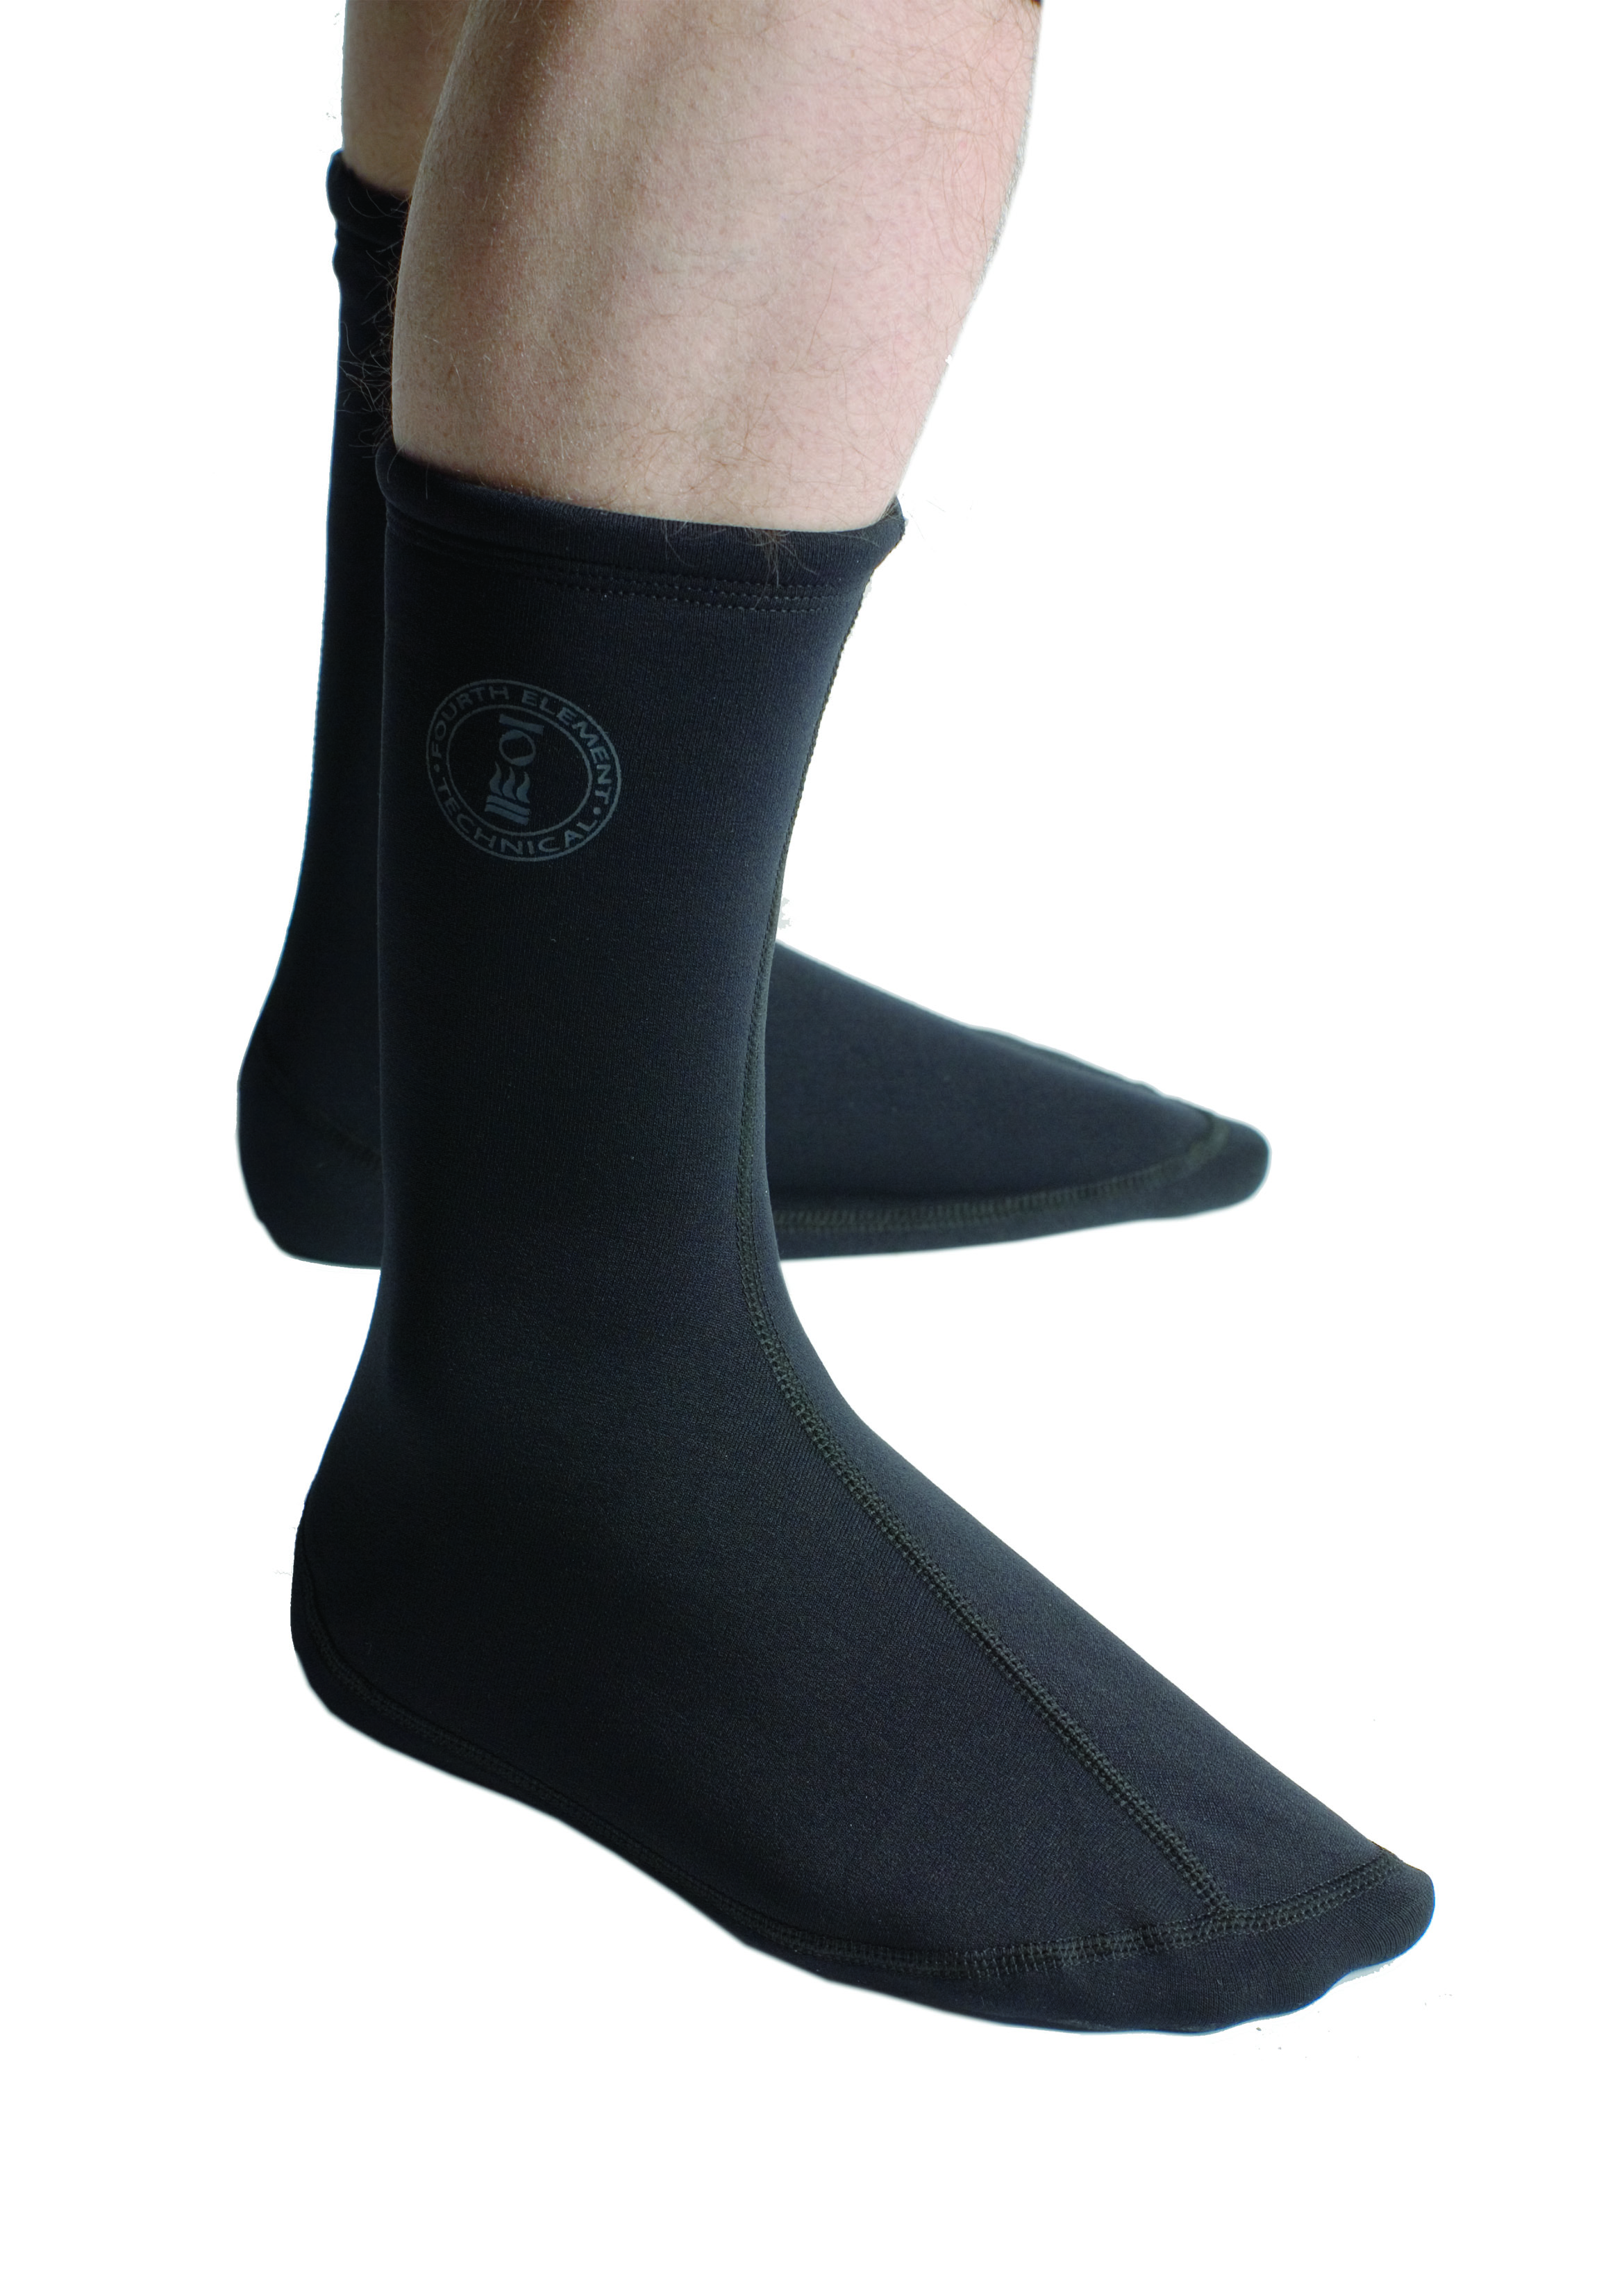 Xerotherm 4er-Set : Top, Long Sleeve, Leggings und Socken (Men Gr. S)